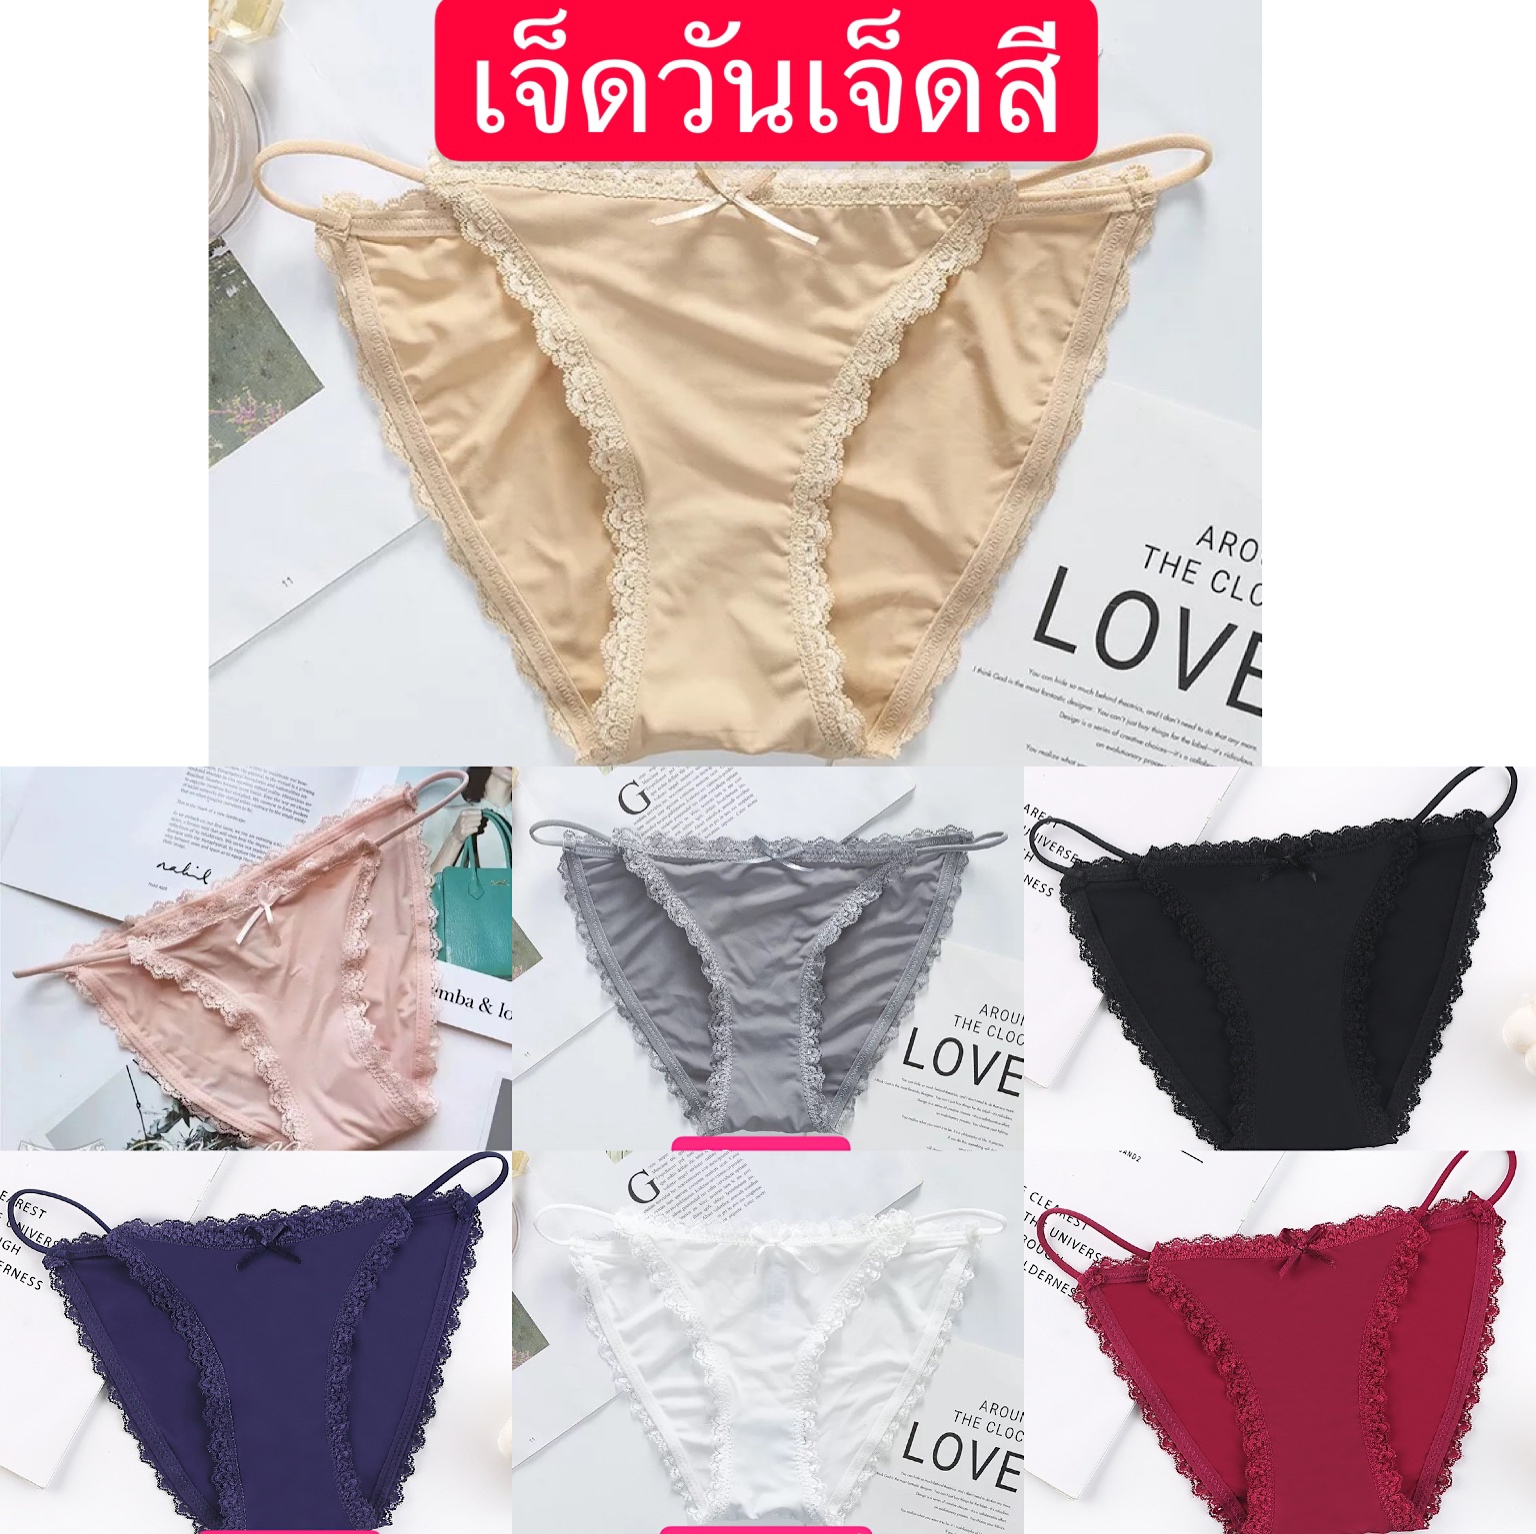 กางเกงในsexy กางเกงในเนียน กางเกงในน่ารัก กางเกงชั้นในโบว์น่ารัก ผ้านุ่มในชุดชั้นใน กางเกงใน หลายสี จัดส่งจากประเทศไทย